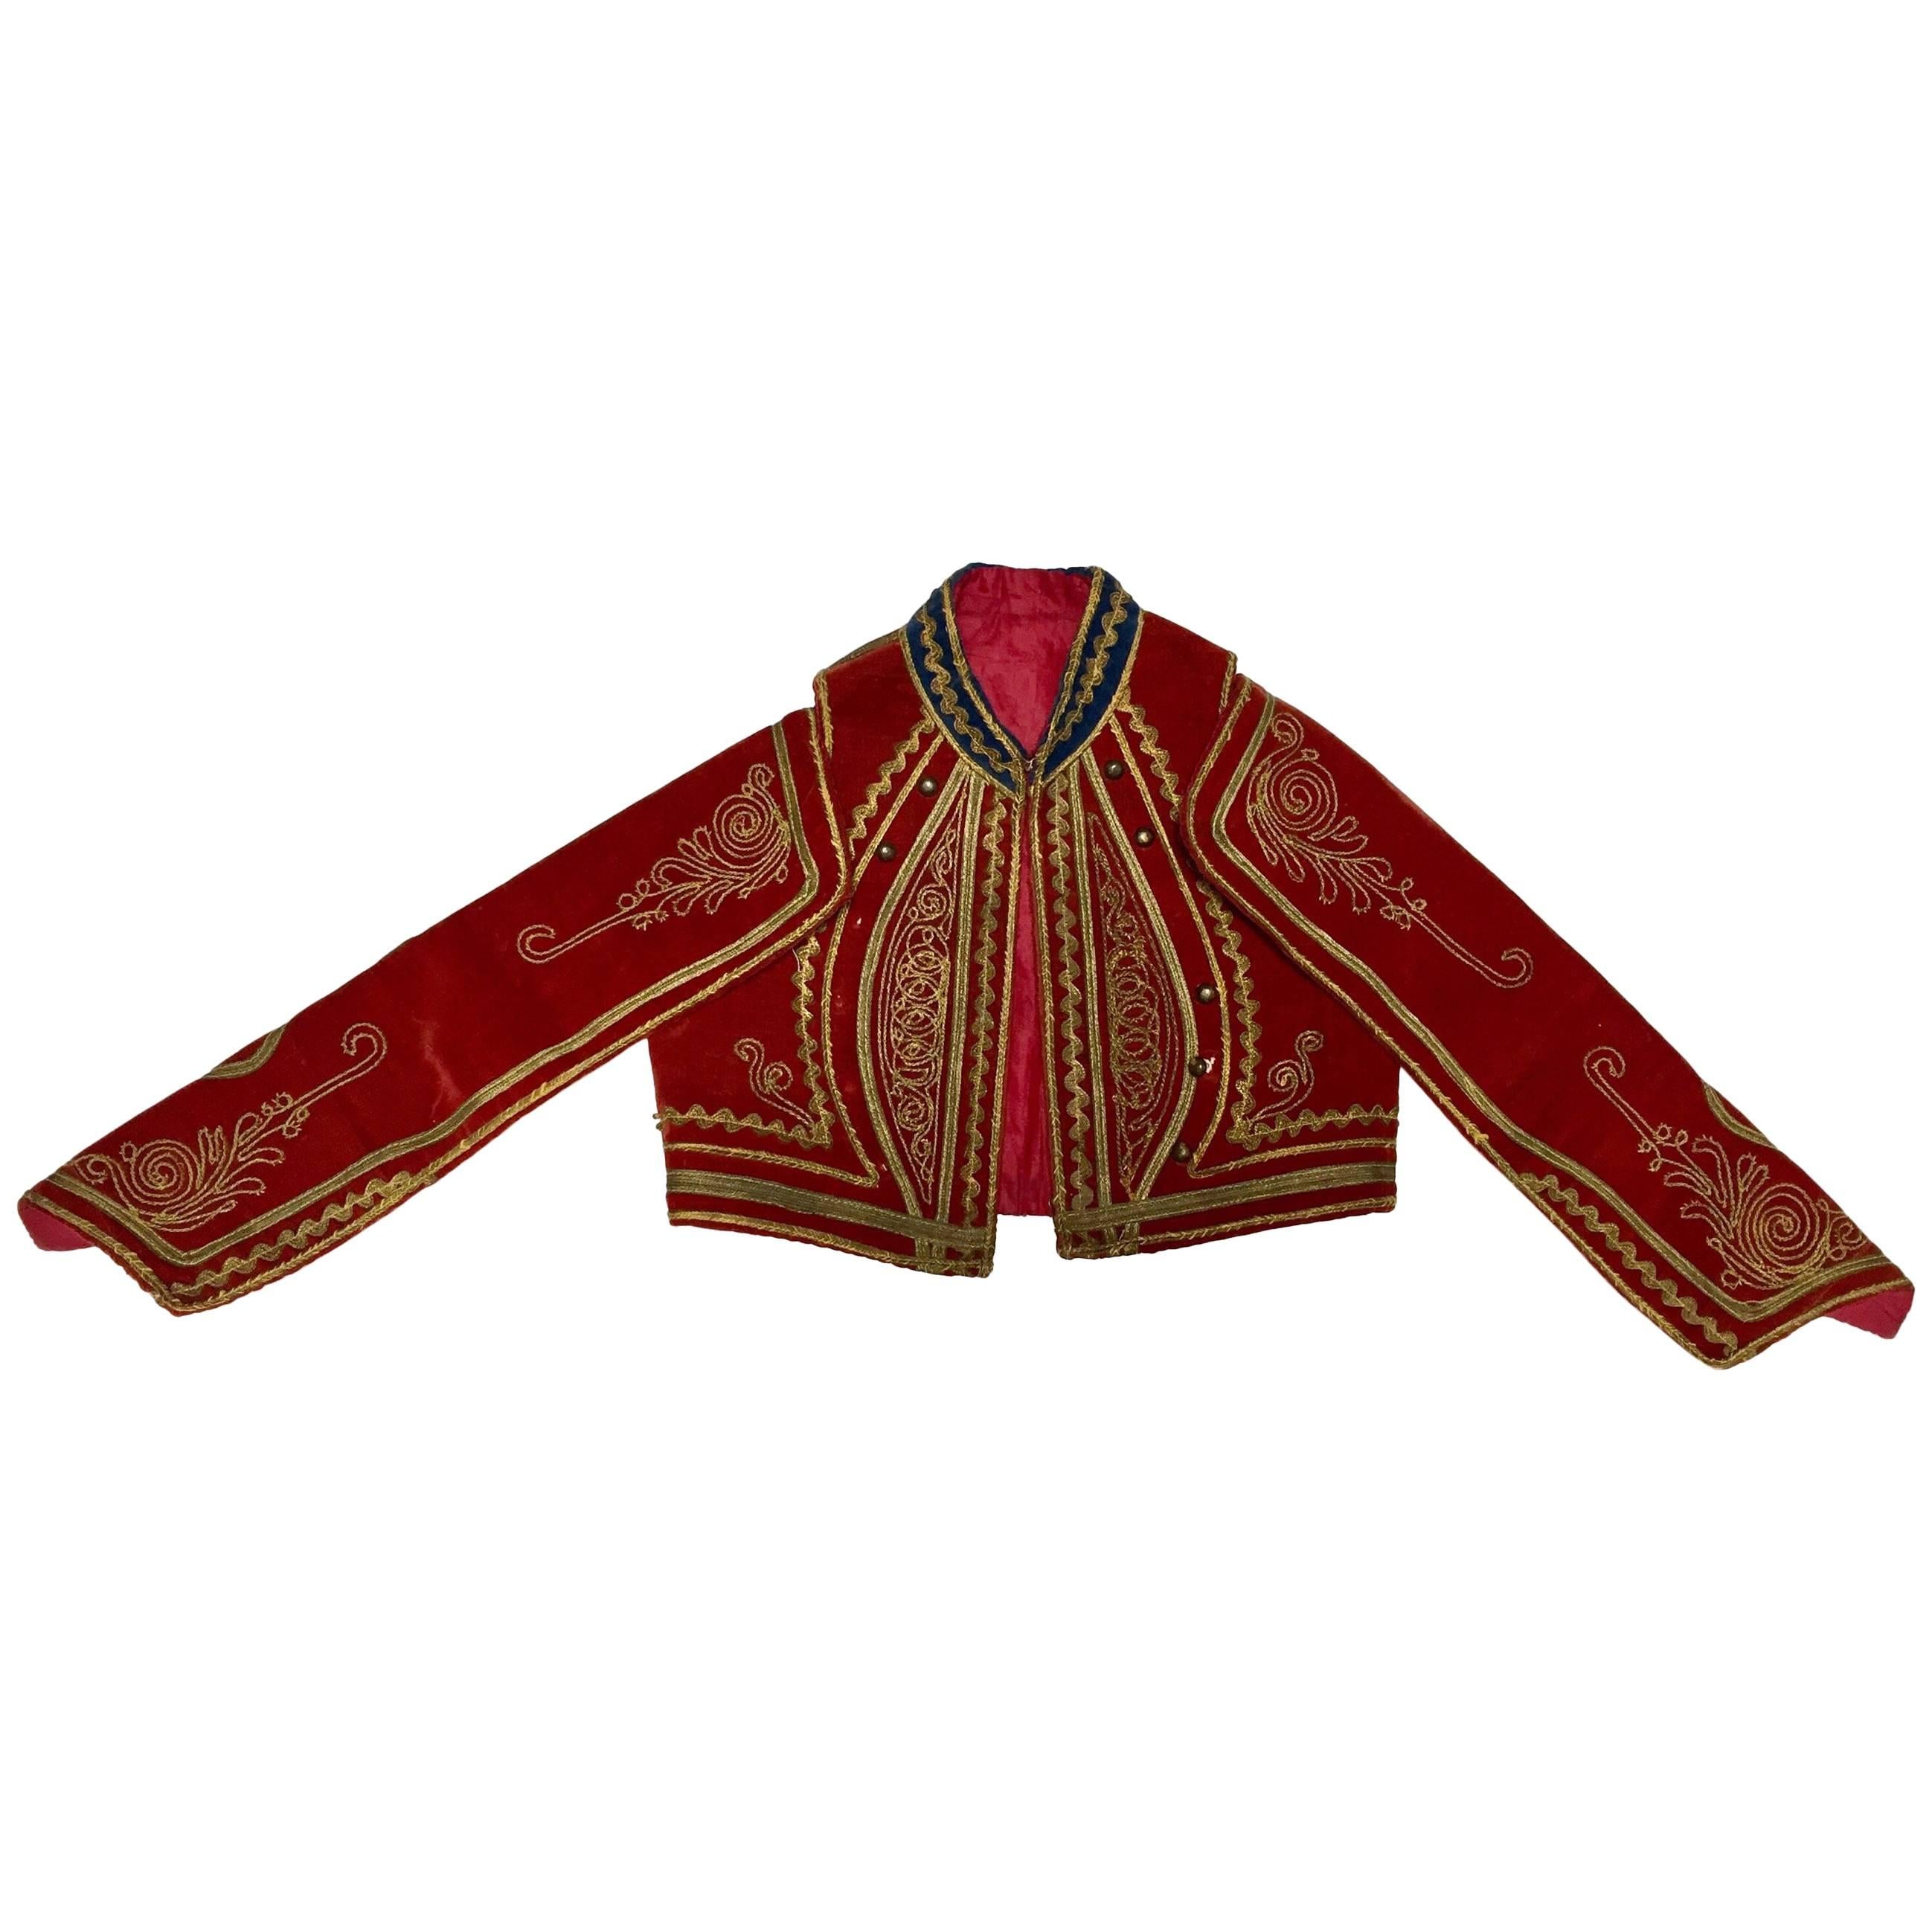 Antique Red Velvet Efe Zeybek Jacket Turkish Vest with Gold Embroidery